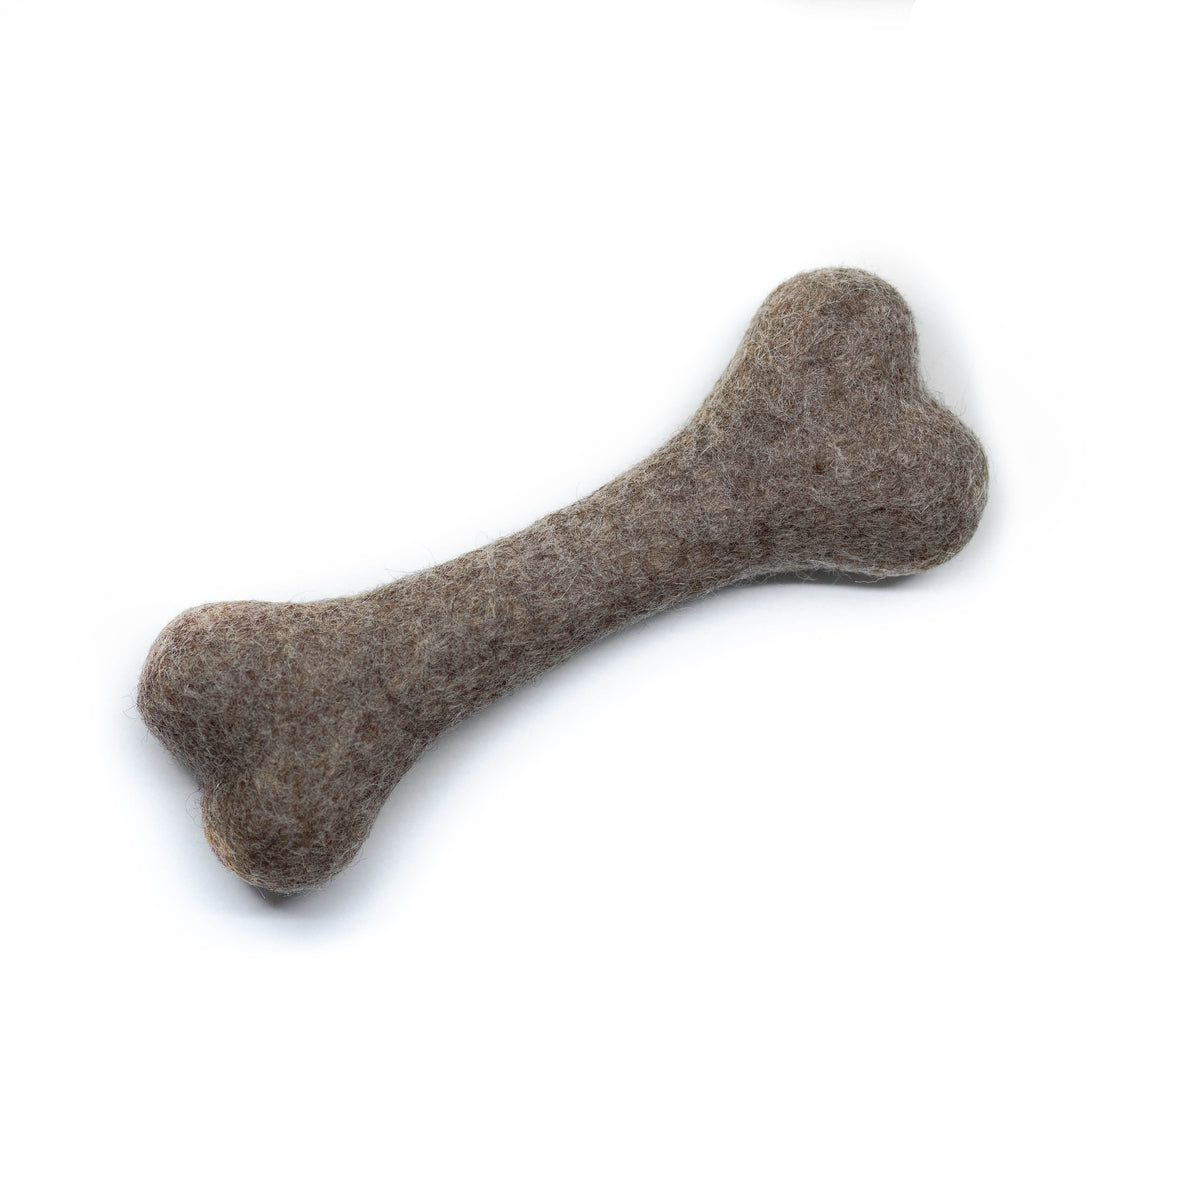 Wool Dog Bone Toy - Taupe